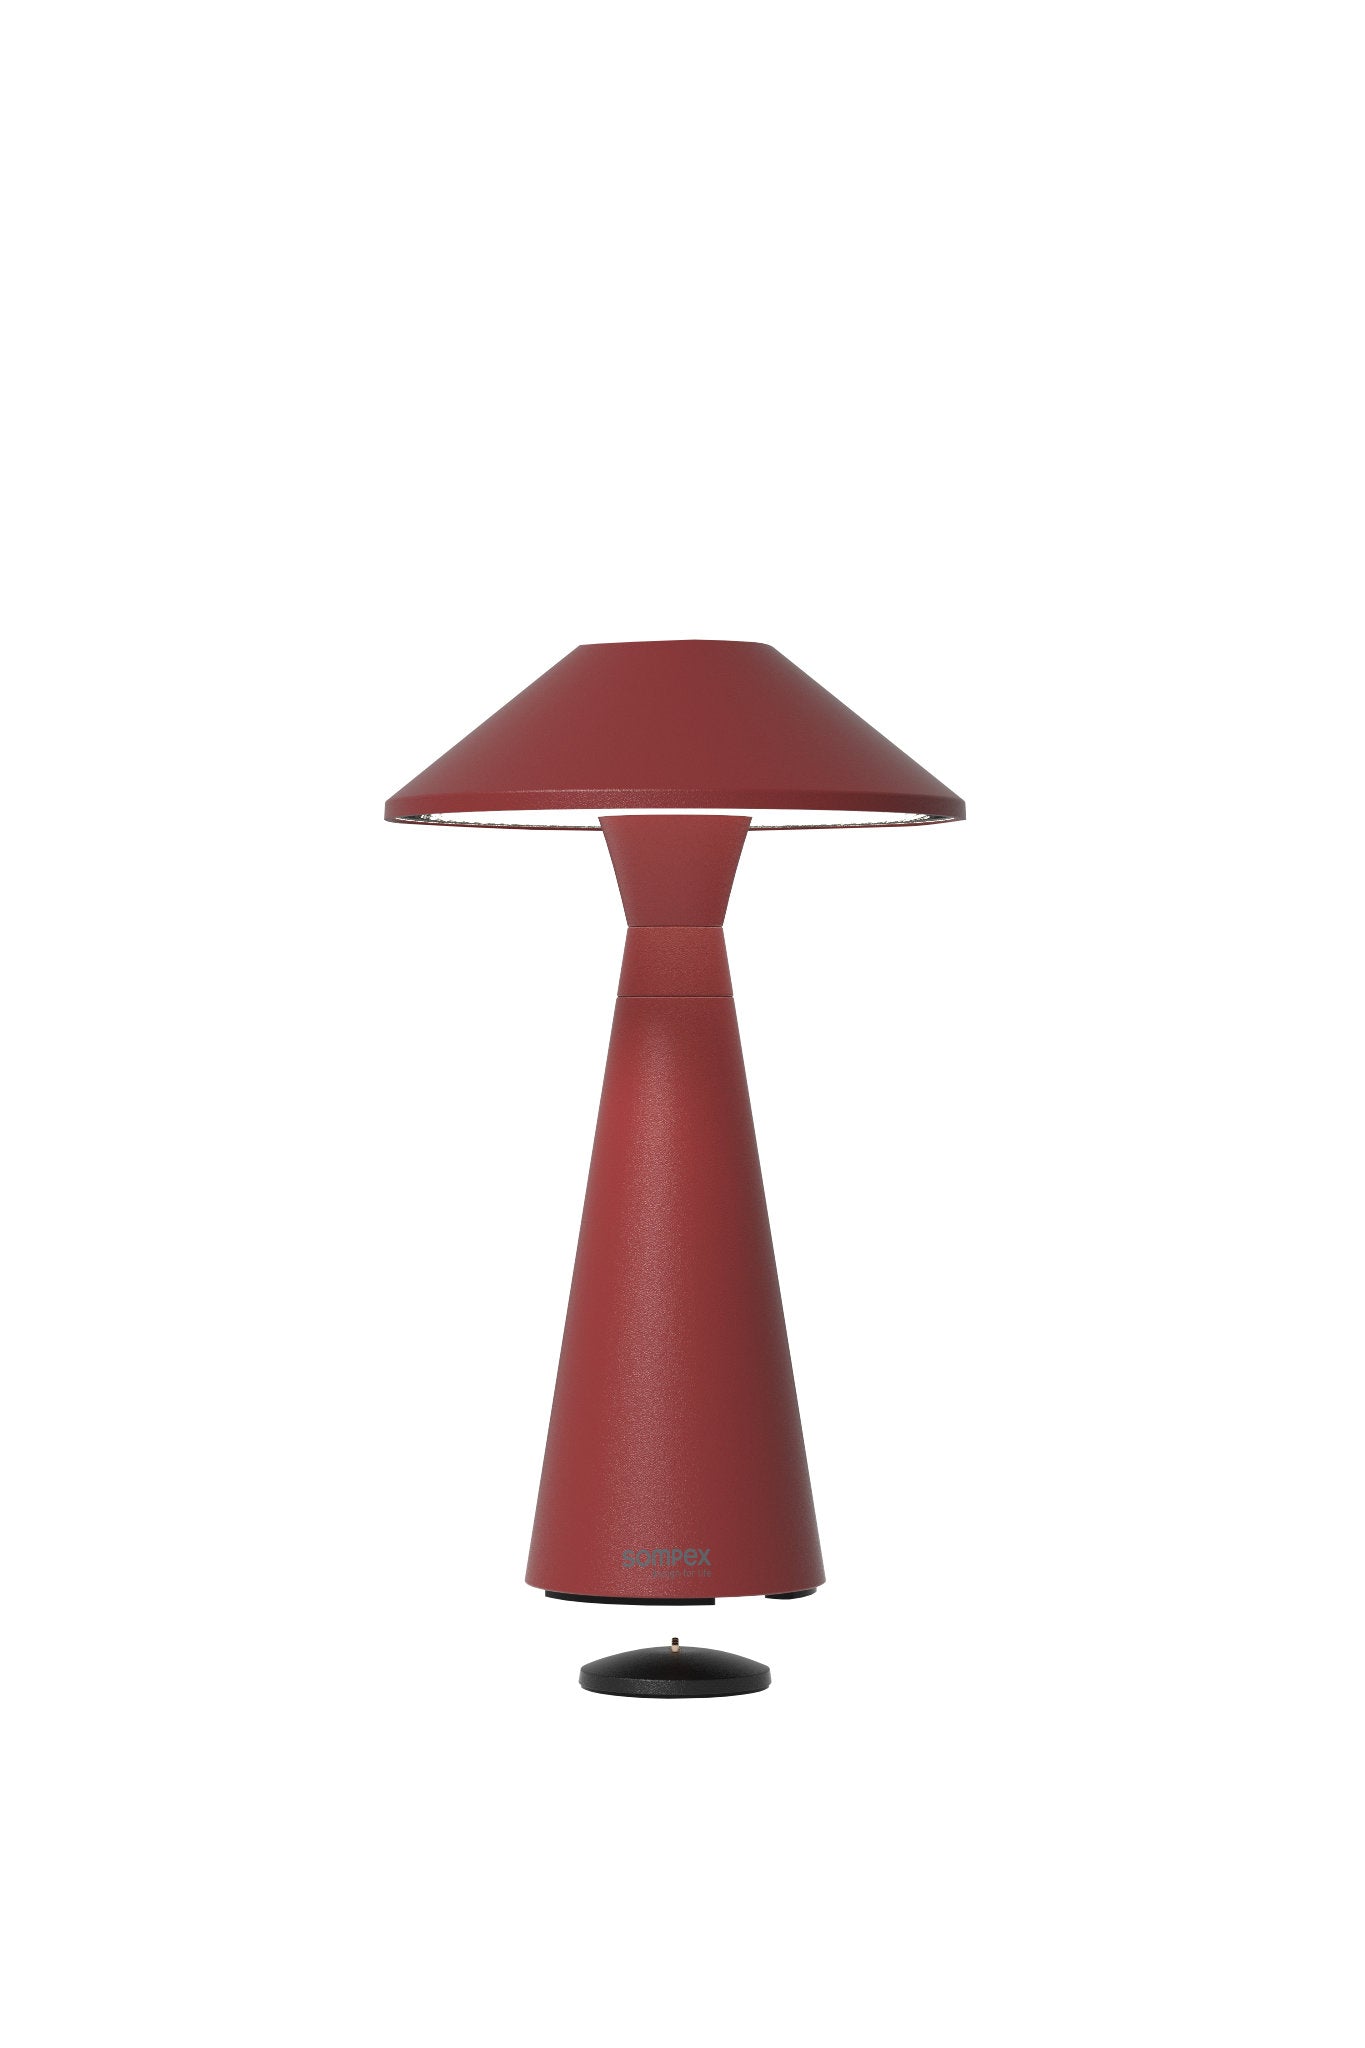 Move Outdoor Akkuleuchte von Sompex mit höhenverstellbarem Schirm, Farbe Rot